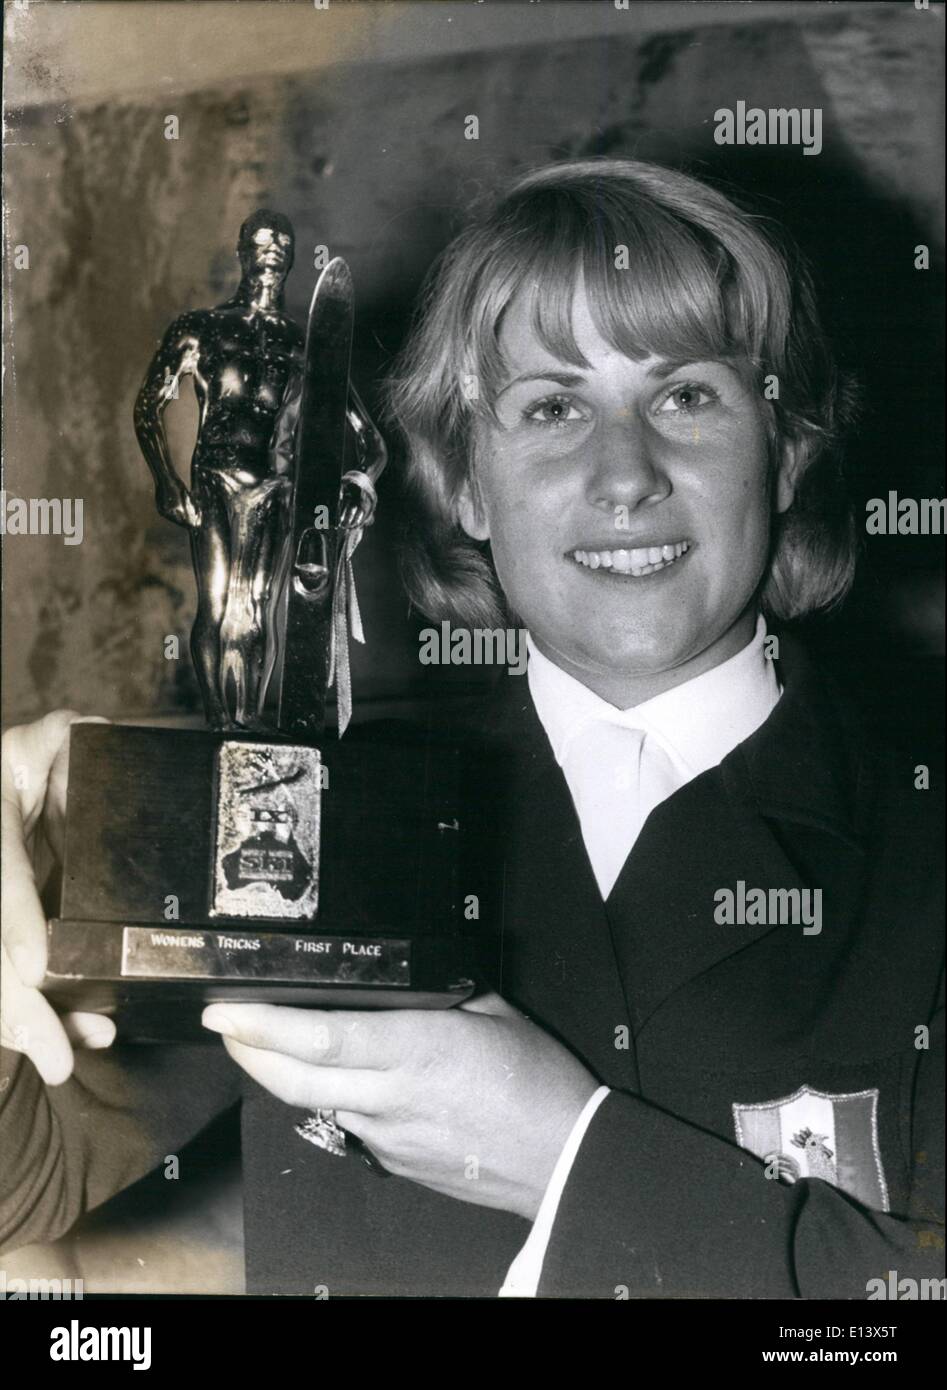 27 mar 2012 - sci d'acqua: Mostra fotografica di Dany Duflot nella foto con il suo trofeo. Foto Stock